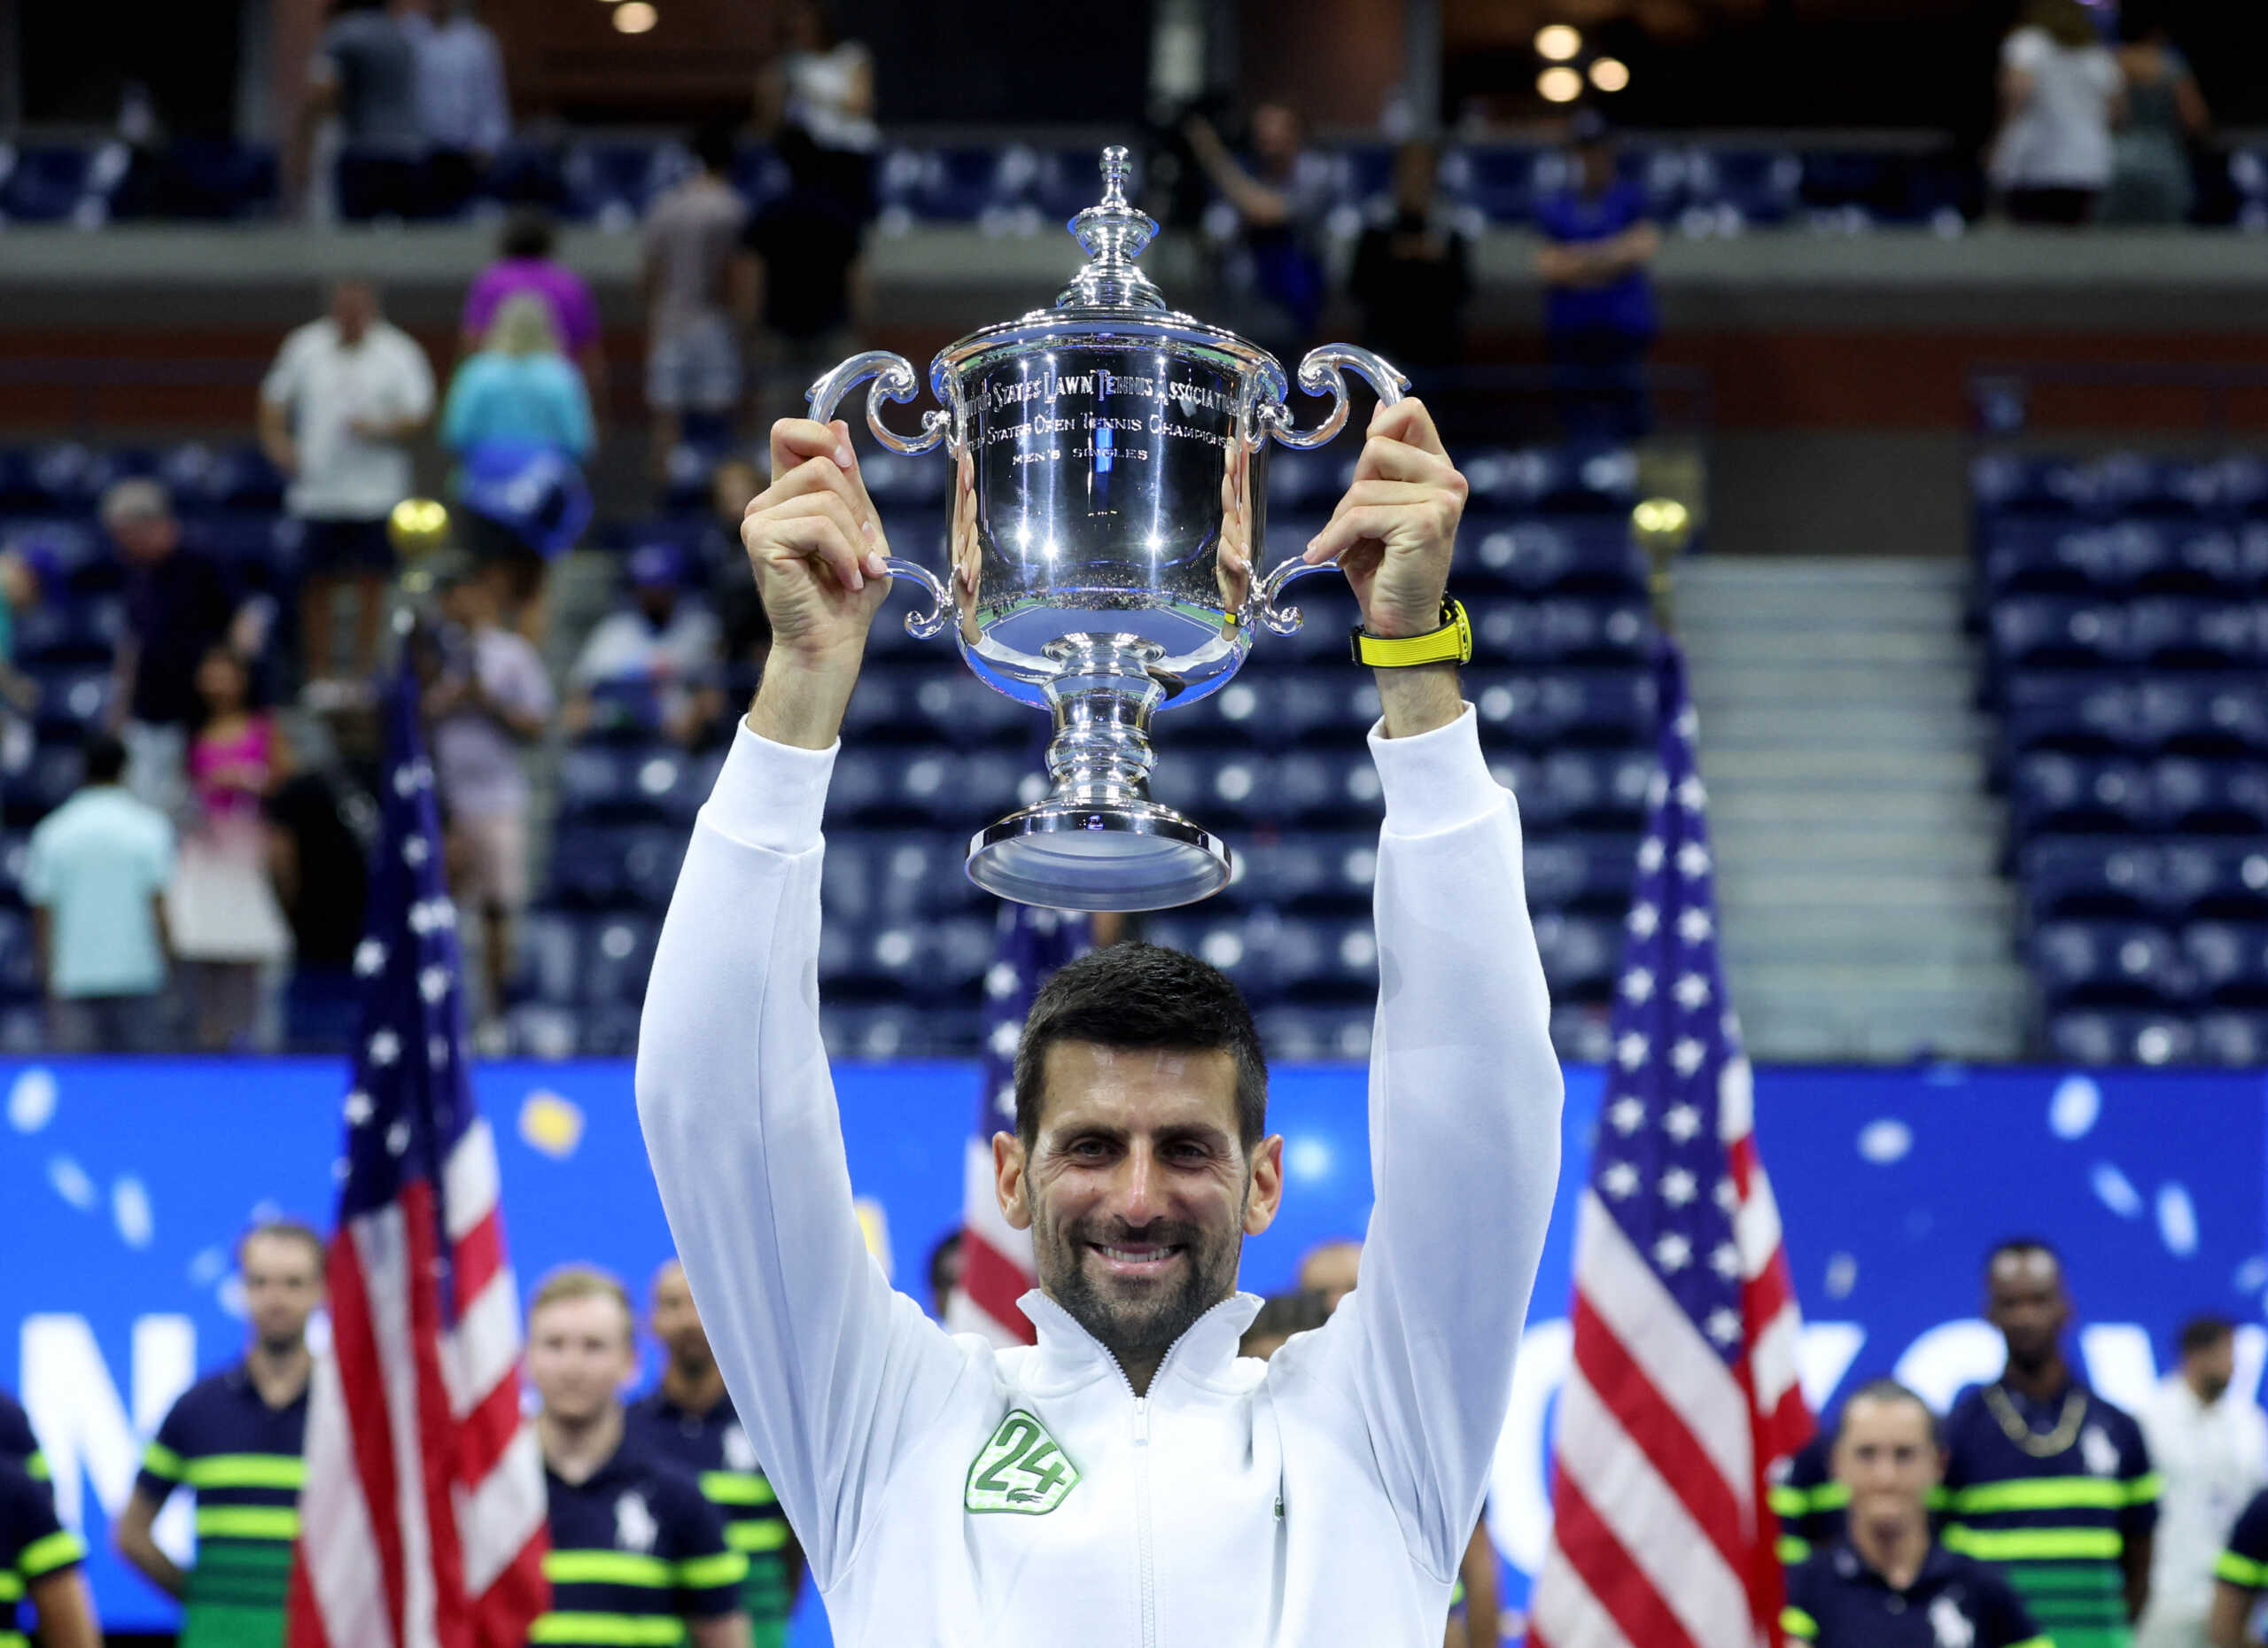 Νόβακ Τζόκοβιτς – Ντανίλ Μεντβέντεφ 3-0: Εύκολη νίκη στον τελικό του US Open για το 24ο Γκραν Σλαμ